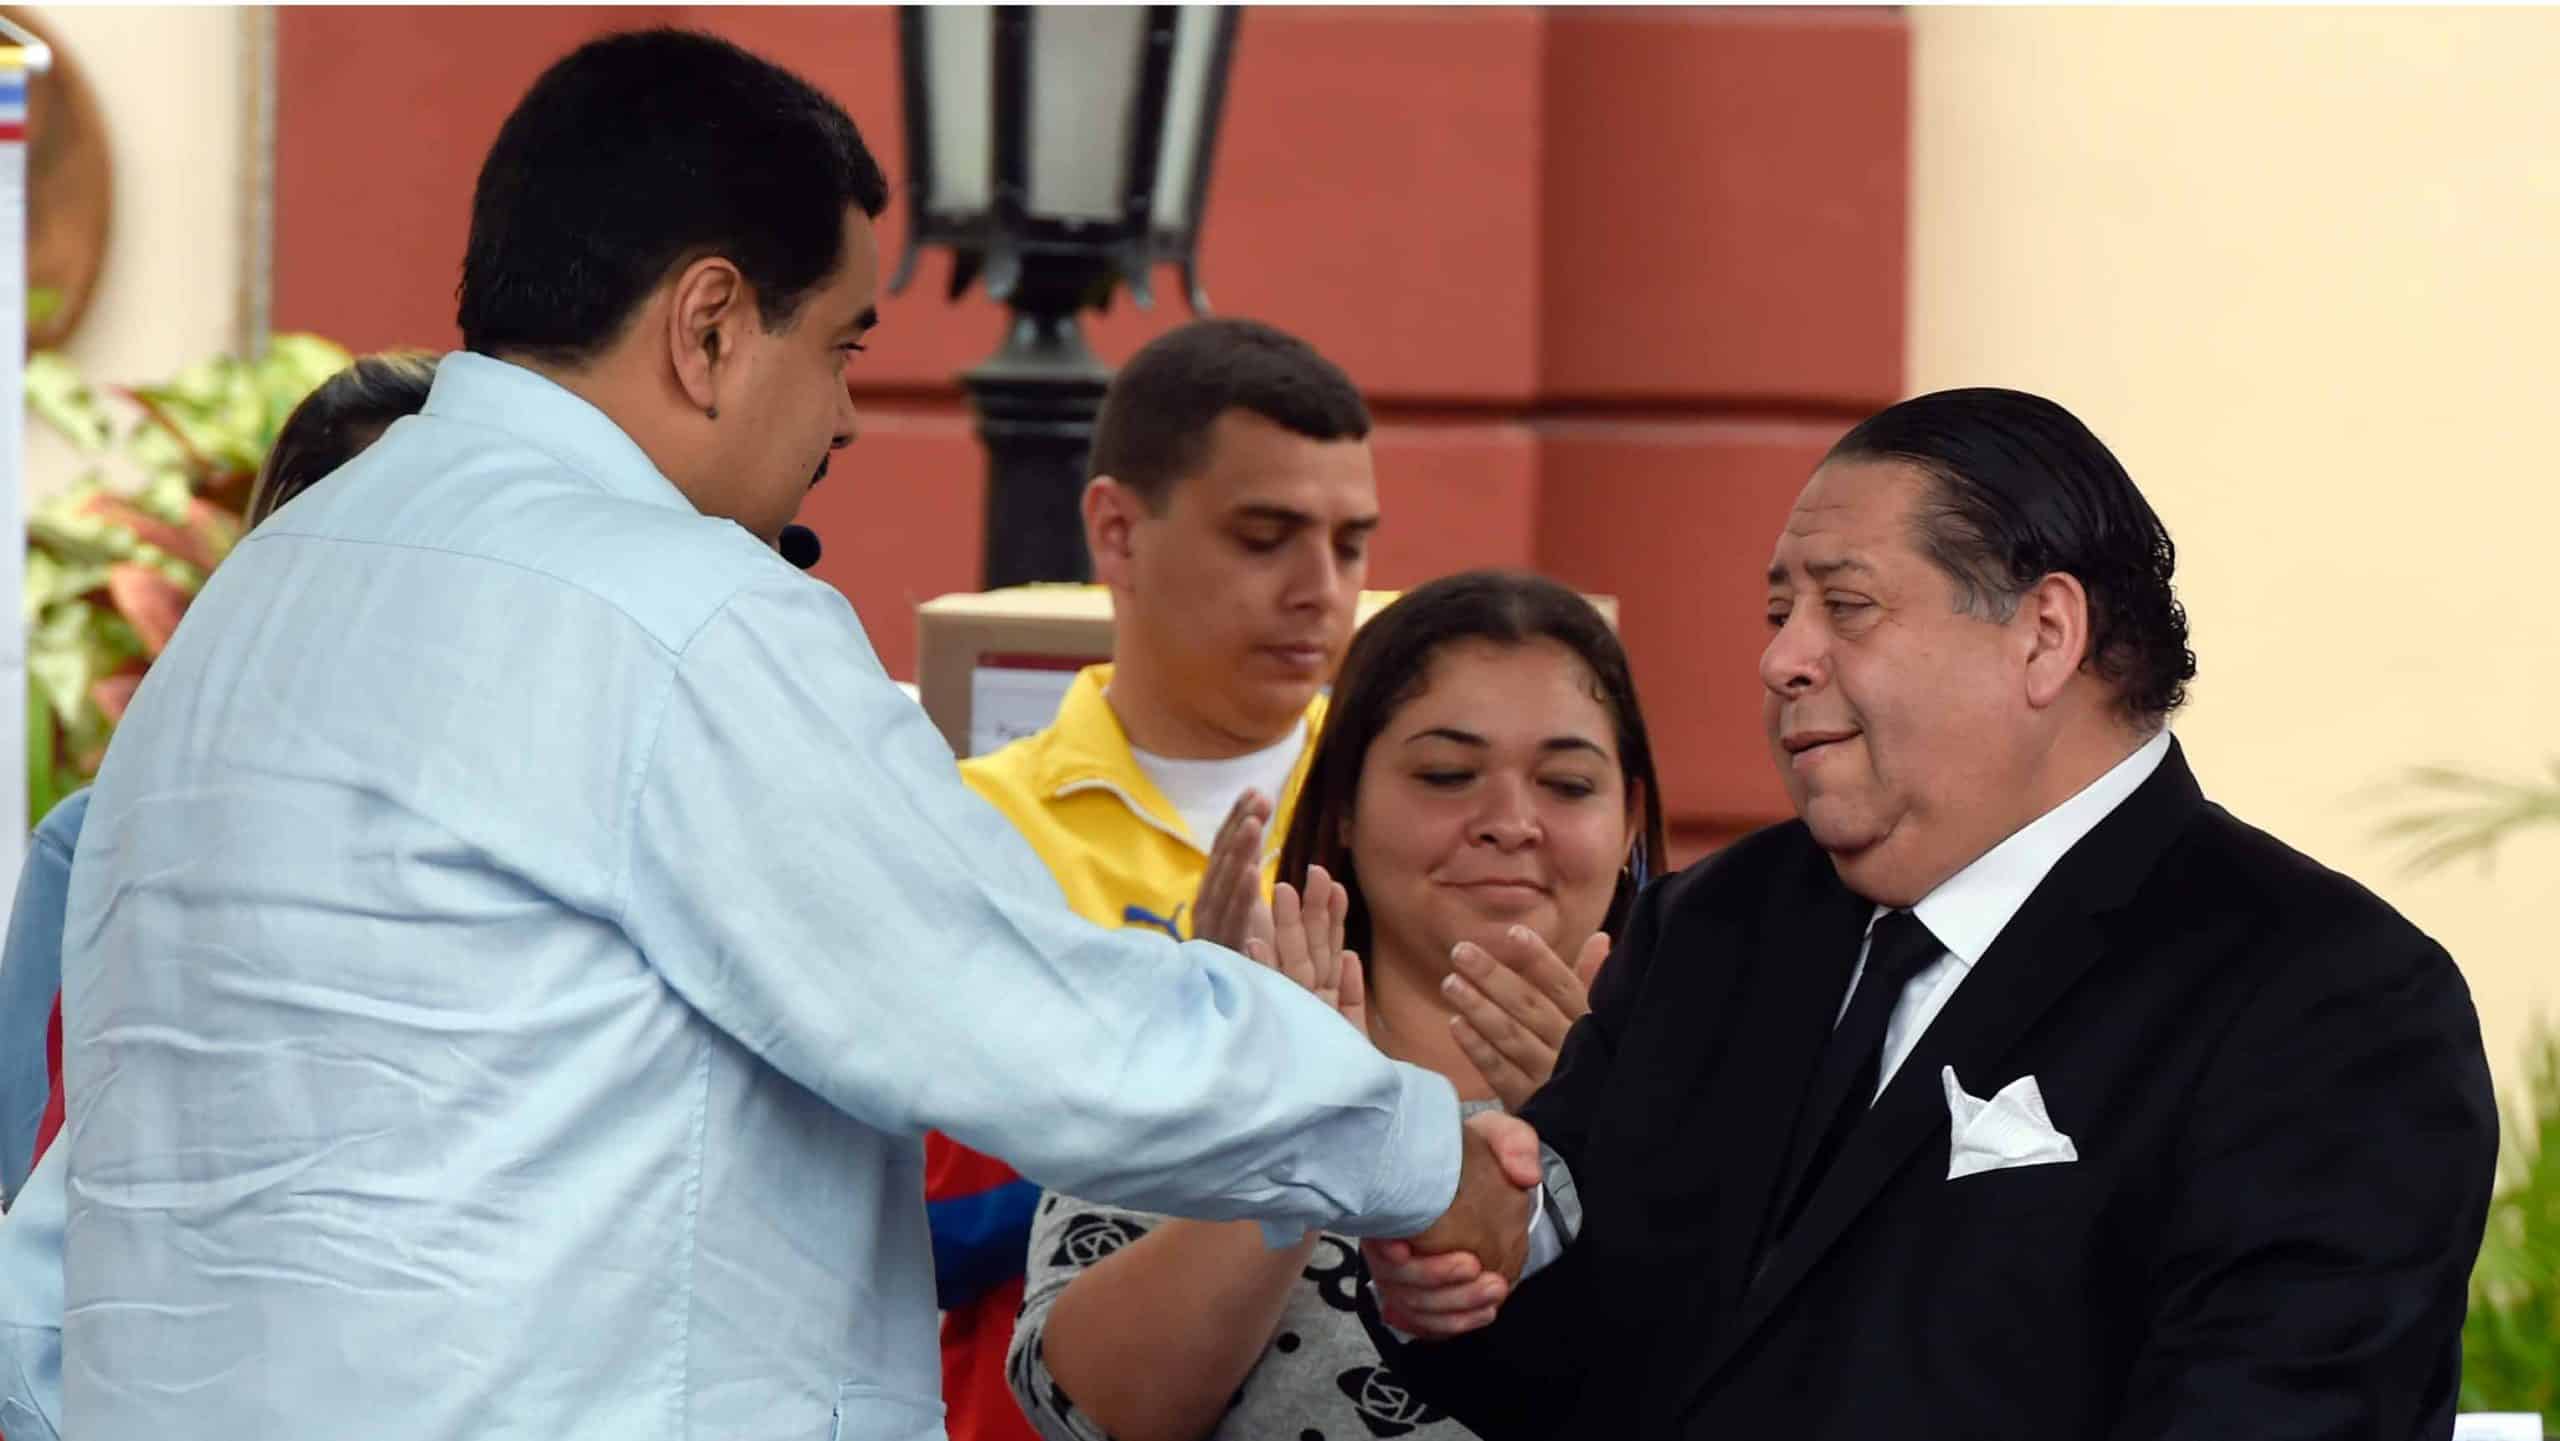 La excusa que prepara el régimen de Maduro para inhabilitar candidatos opositores